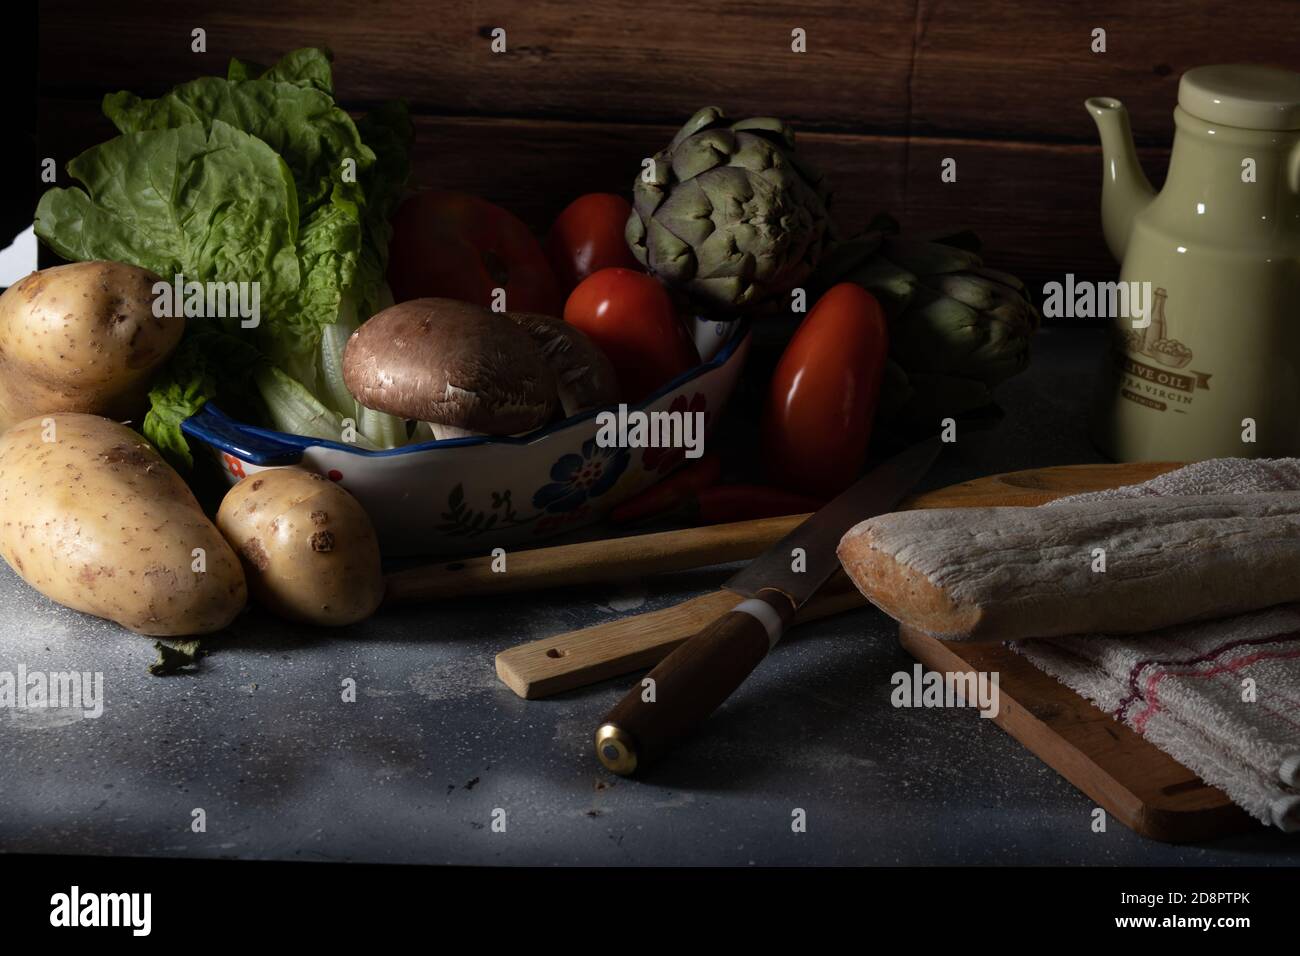 Still life dark food with vegetables, mushrooms, oil, bread. Stock Photo